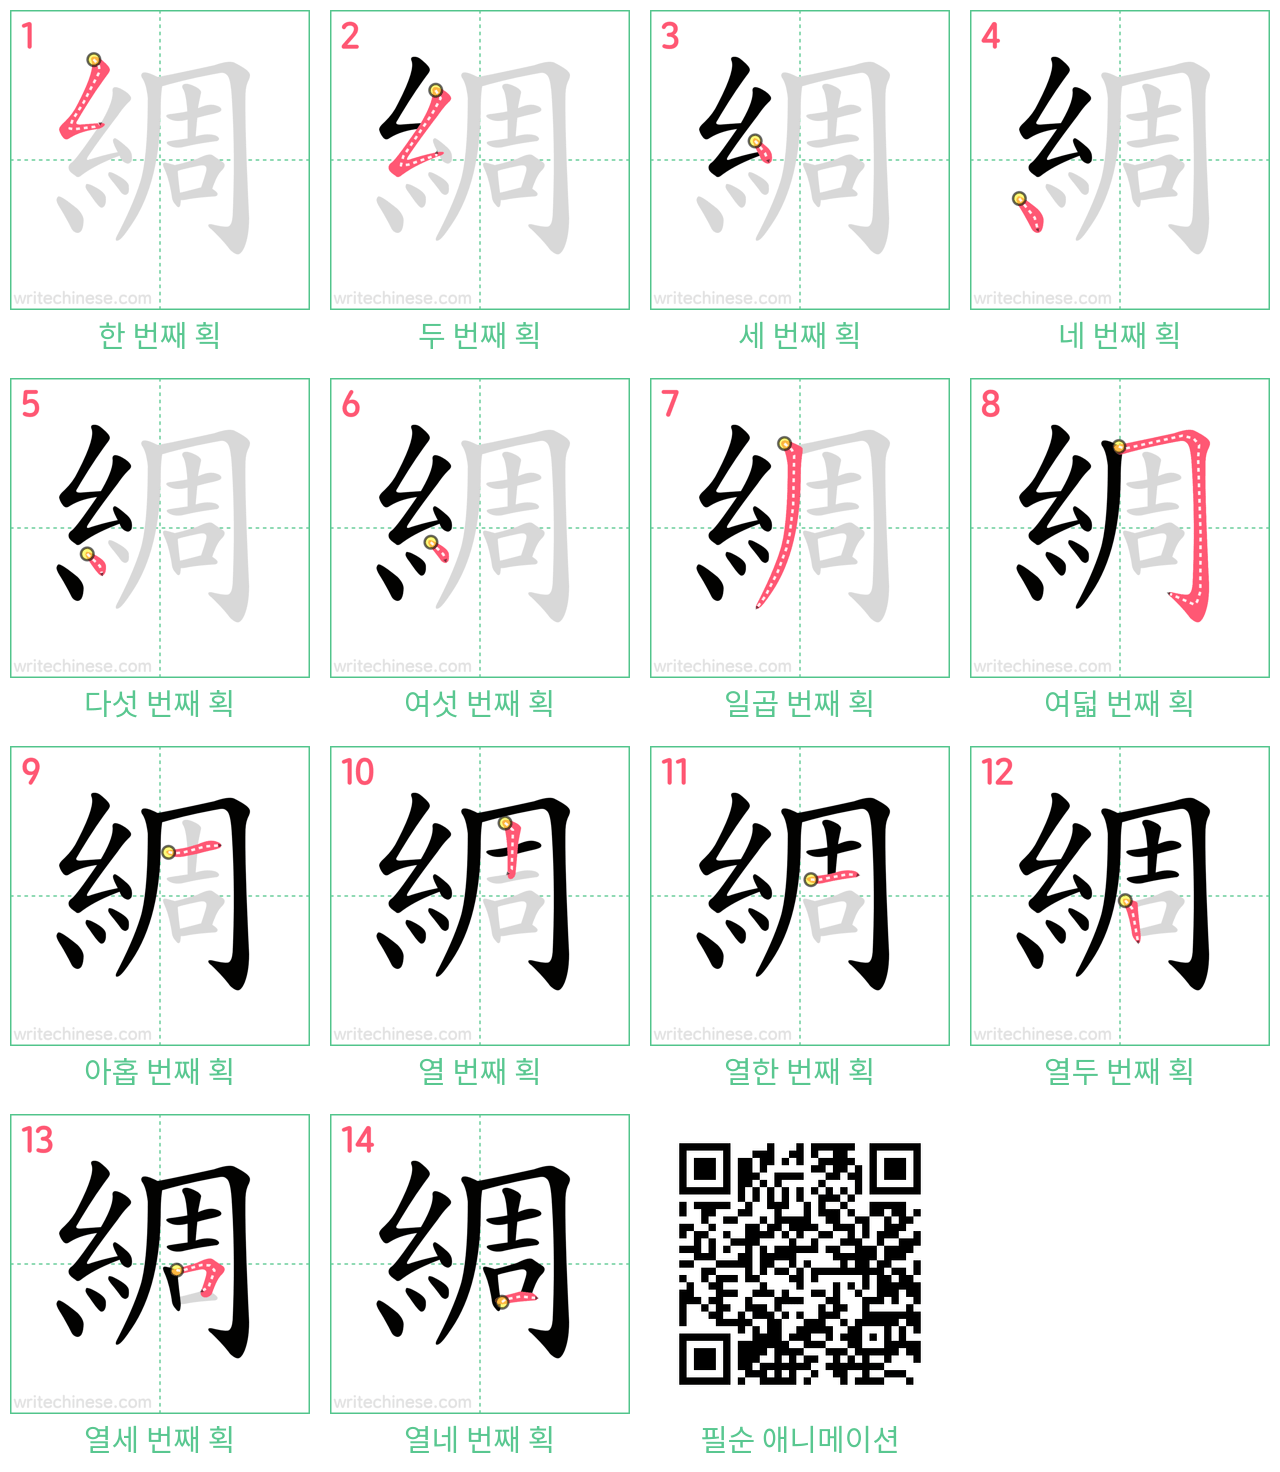 綢 step-by-step stroke order diagrams